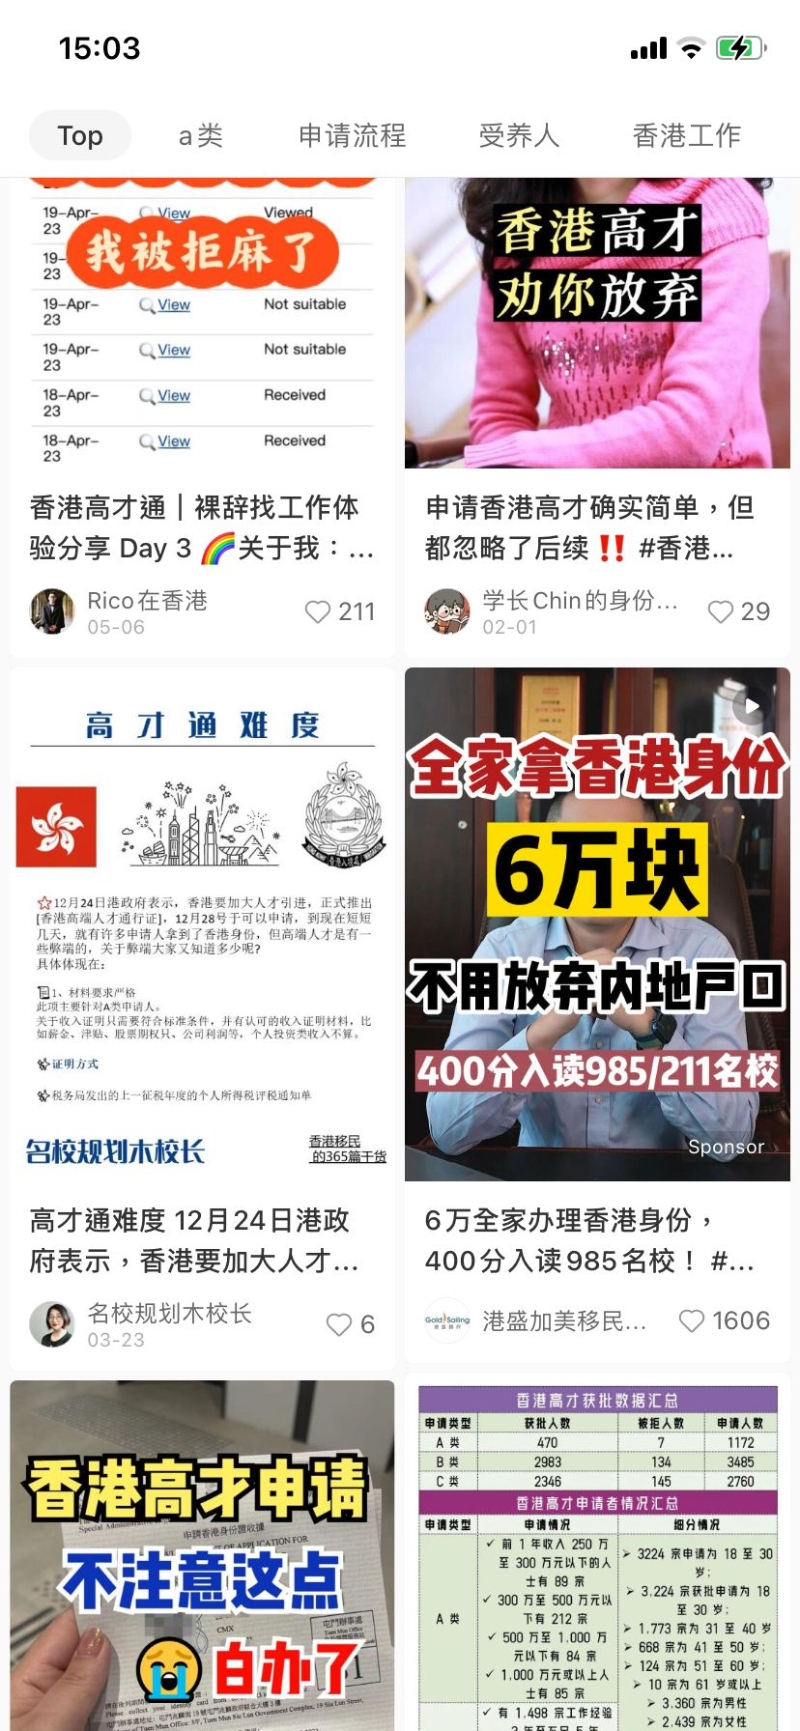 小红书上申请香港身份的广告满天飞，李家超曾表示已有超过3.2万人申请高才通，其中超过2.1万人获得了审批，并有7，000人已领取香港身份证